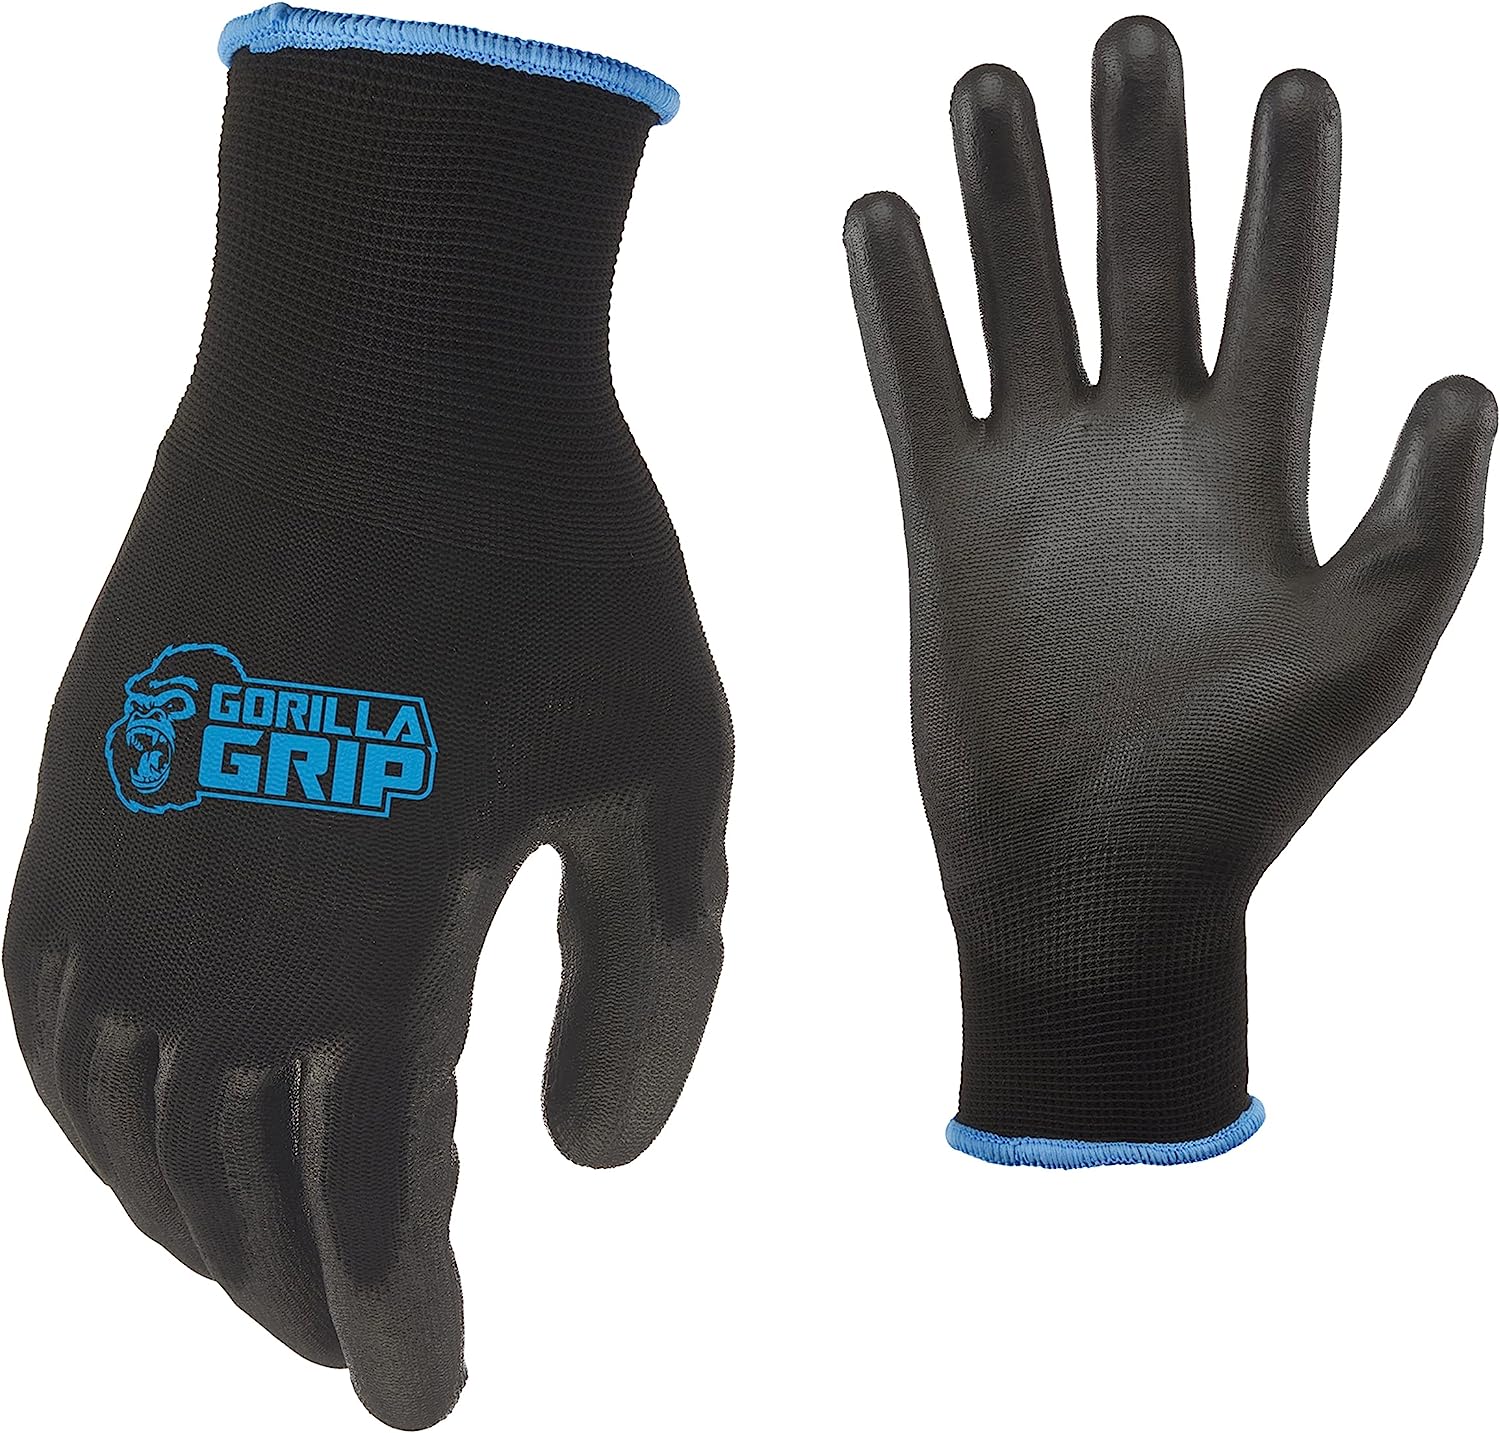 GORILLA GRIP Never Slip, Maximum Grip All-Purpose Gloves